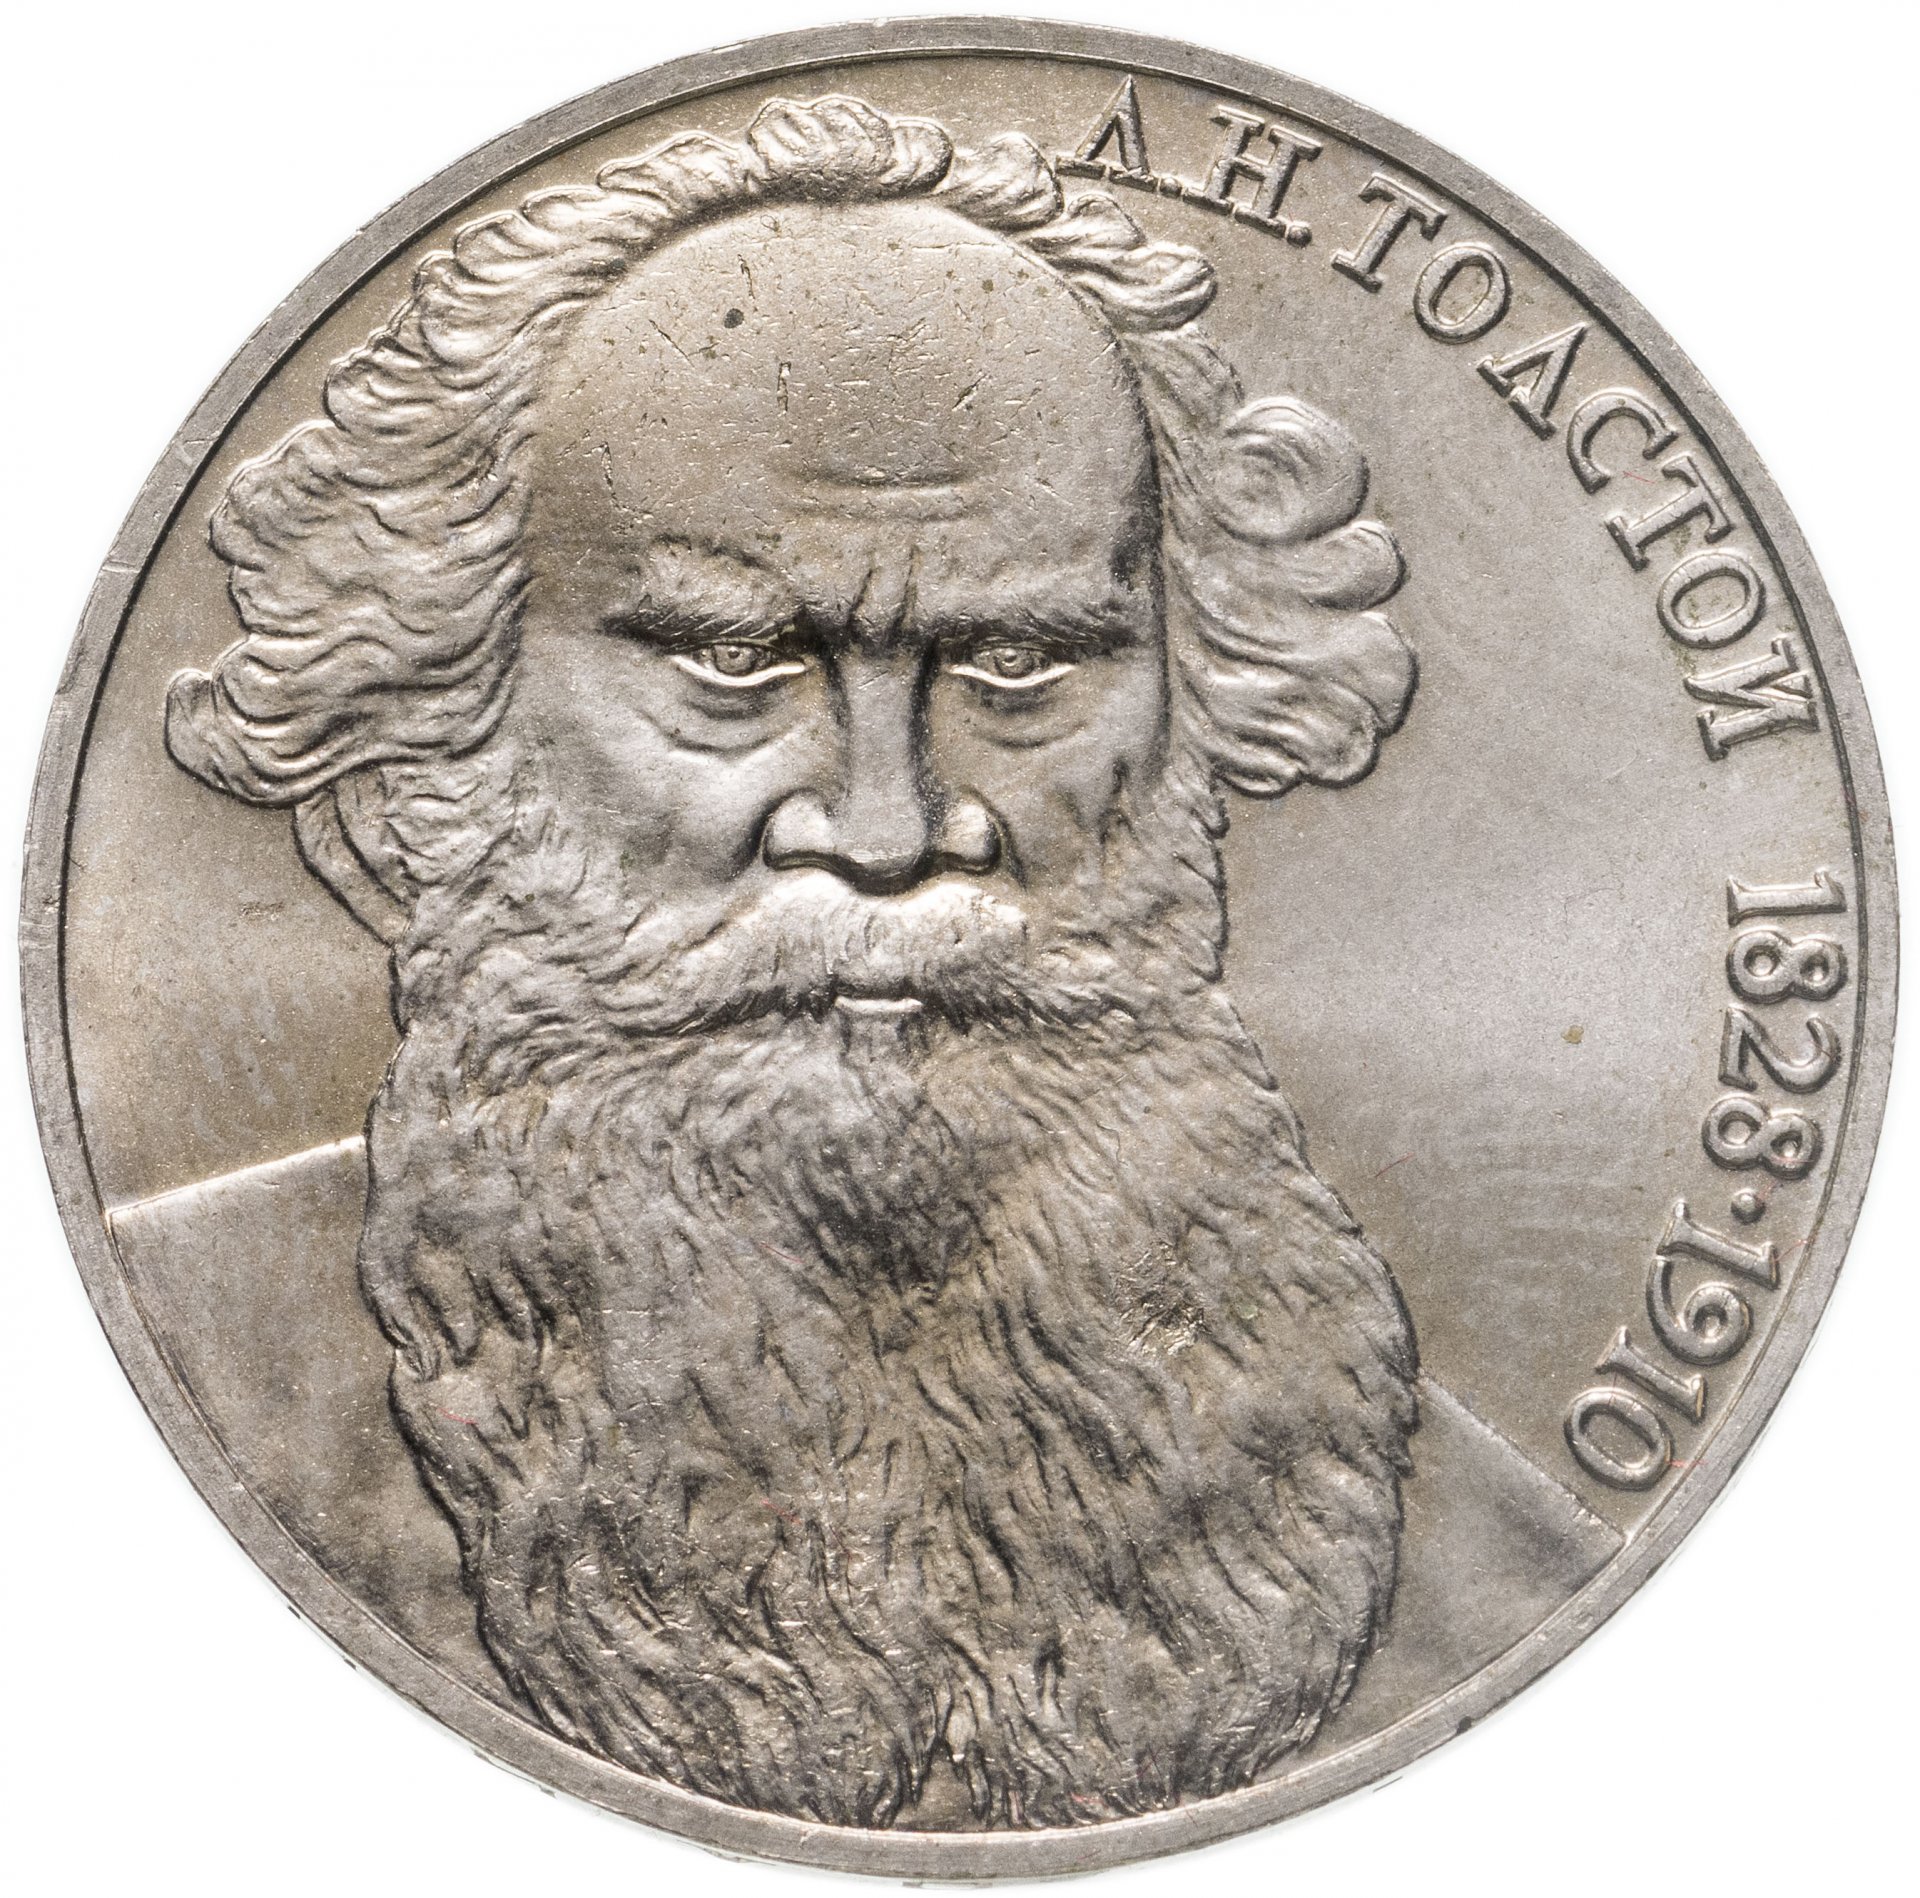 Рубль толстой цена. Монета с толстым львом 1рубль. Толстой монета СССР. 1 Рубль 1988 л. н. толстой. Сколько стоит 1 рубль с Лев толстым.